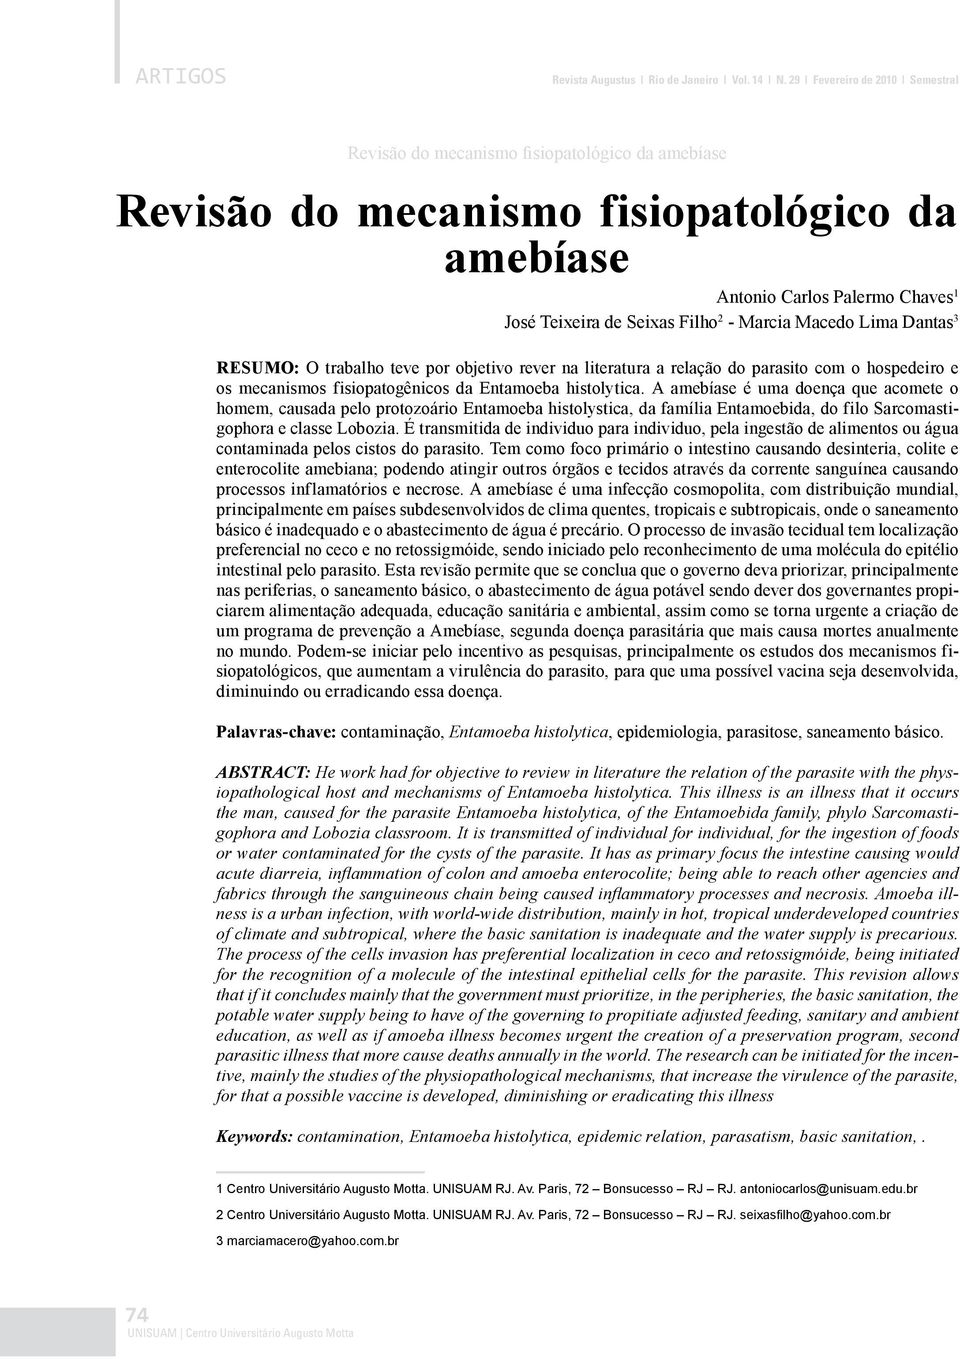 Marcia Macedo Lima Dantas 3 RESUMO: O trabalho teve por objetivo rever na literatura a relação do parasito com o hospedeiro e os mecanismos fisiopatogênicos da Entamoeba histolytica.